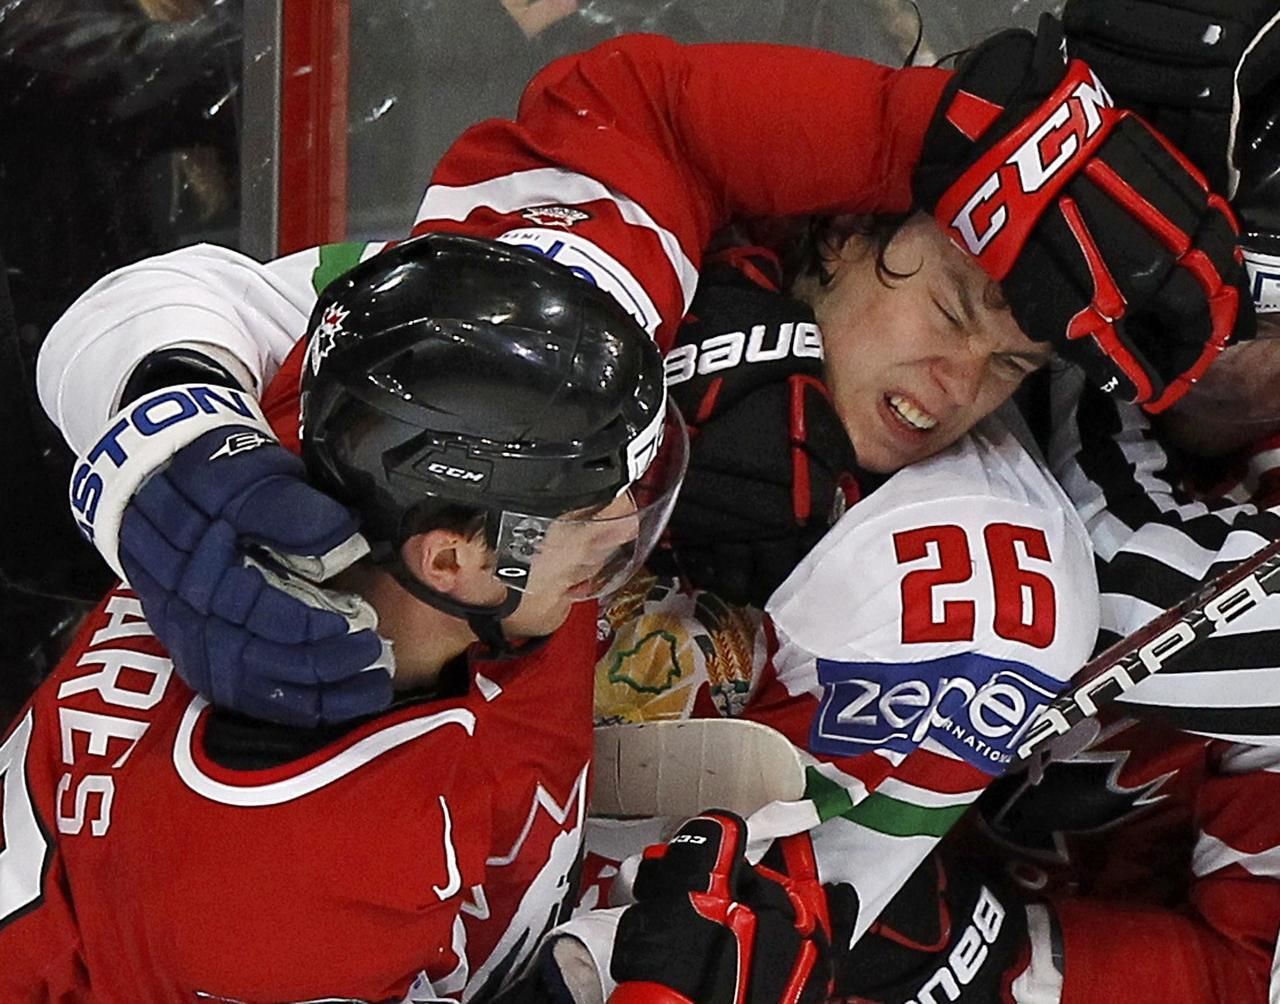 Kanaďan Tavares a Bělorus Stas při bitce na MS v hokeji